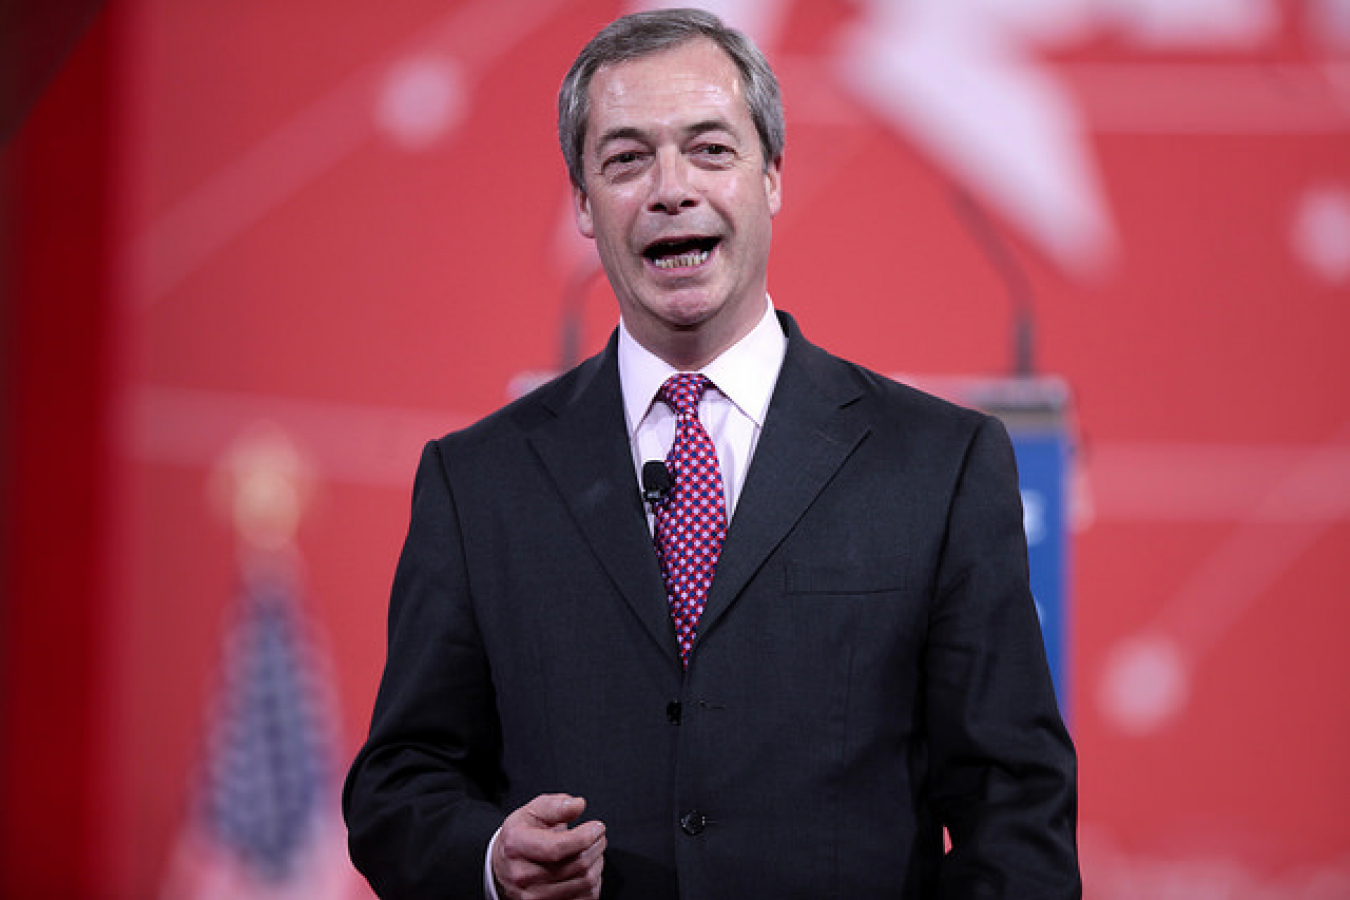 Nigel Farage former Leader of UKIP UK Independence Party